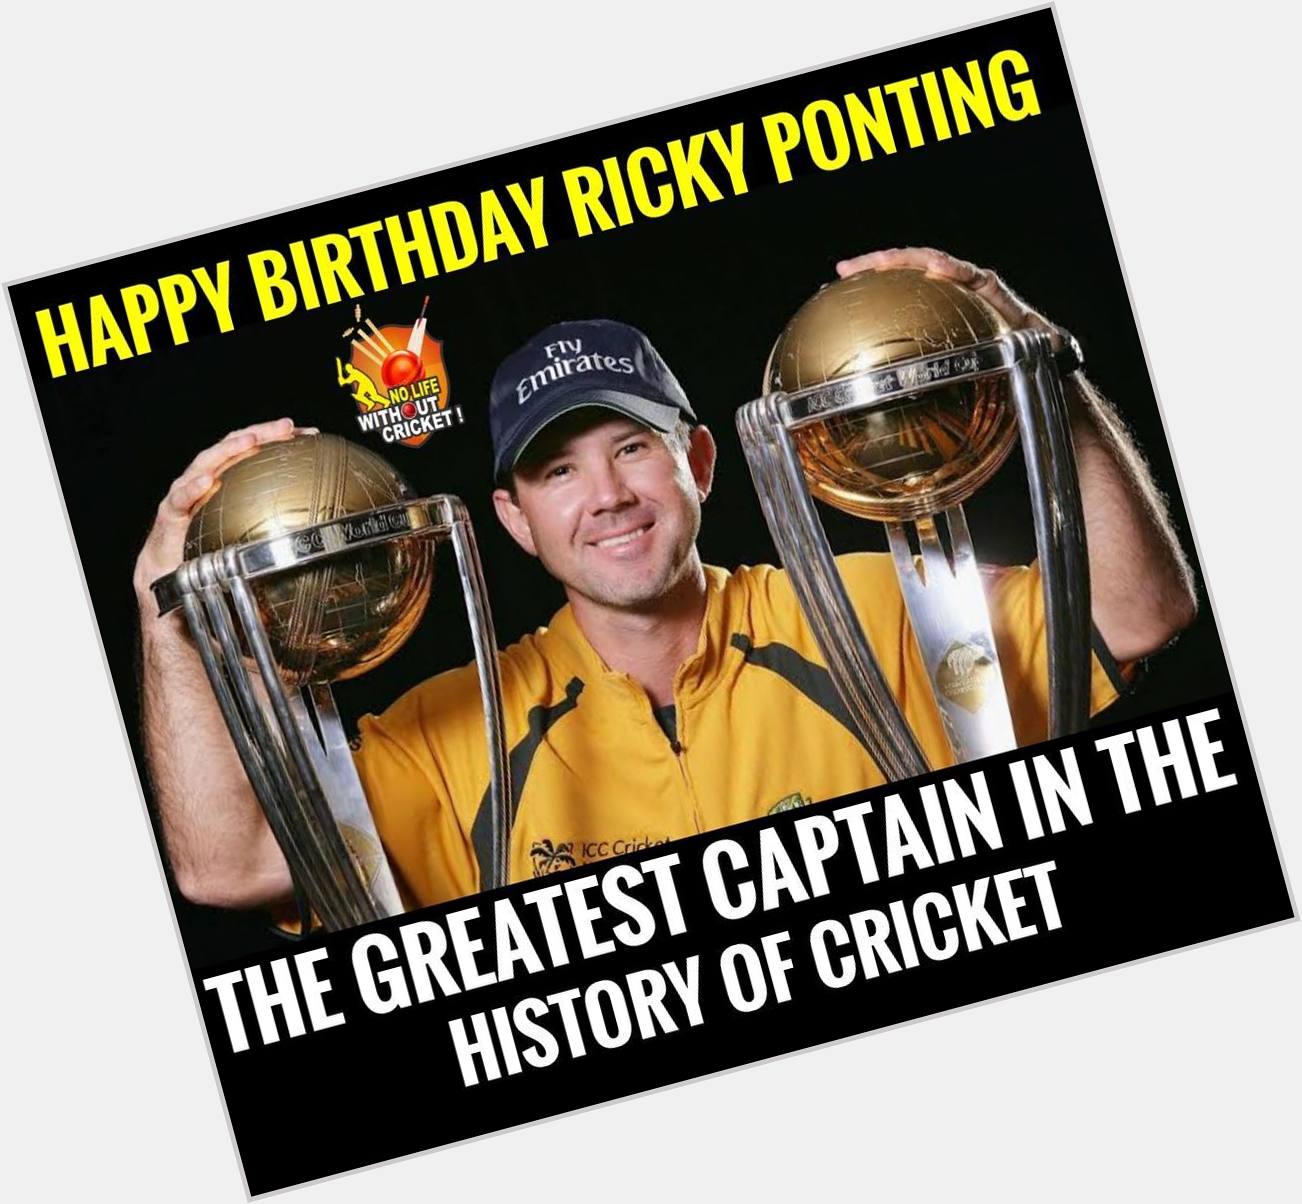 Happy birthday to Ricky Ponting 